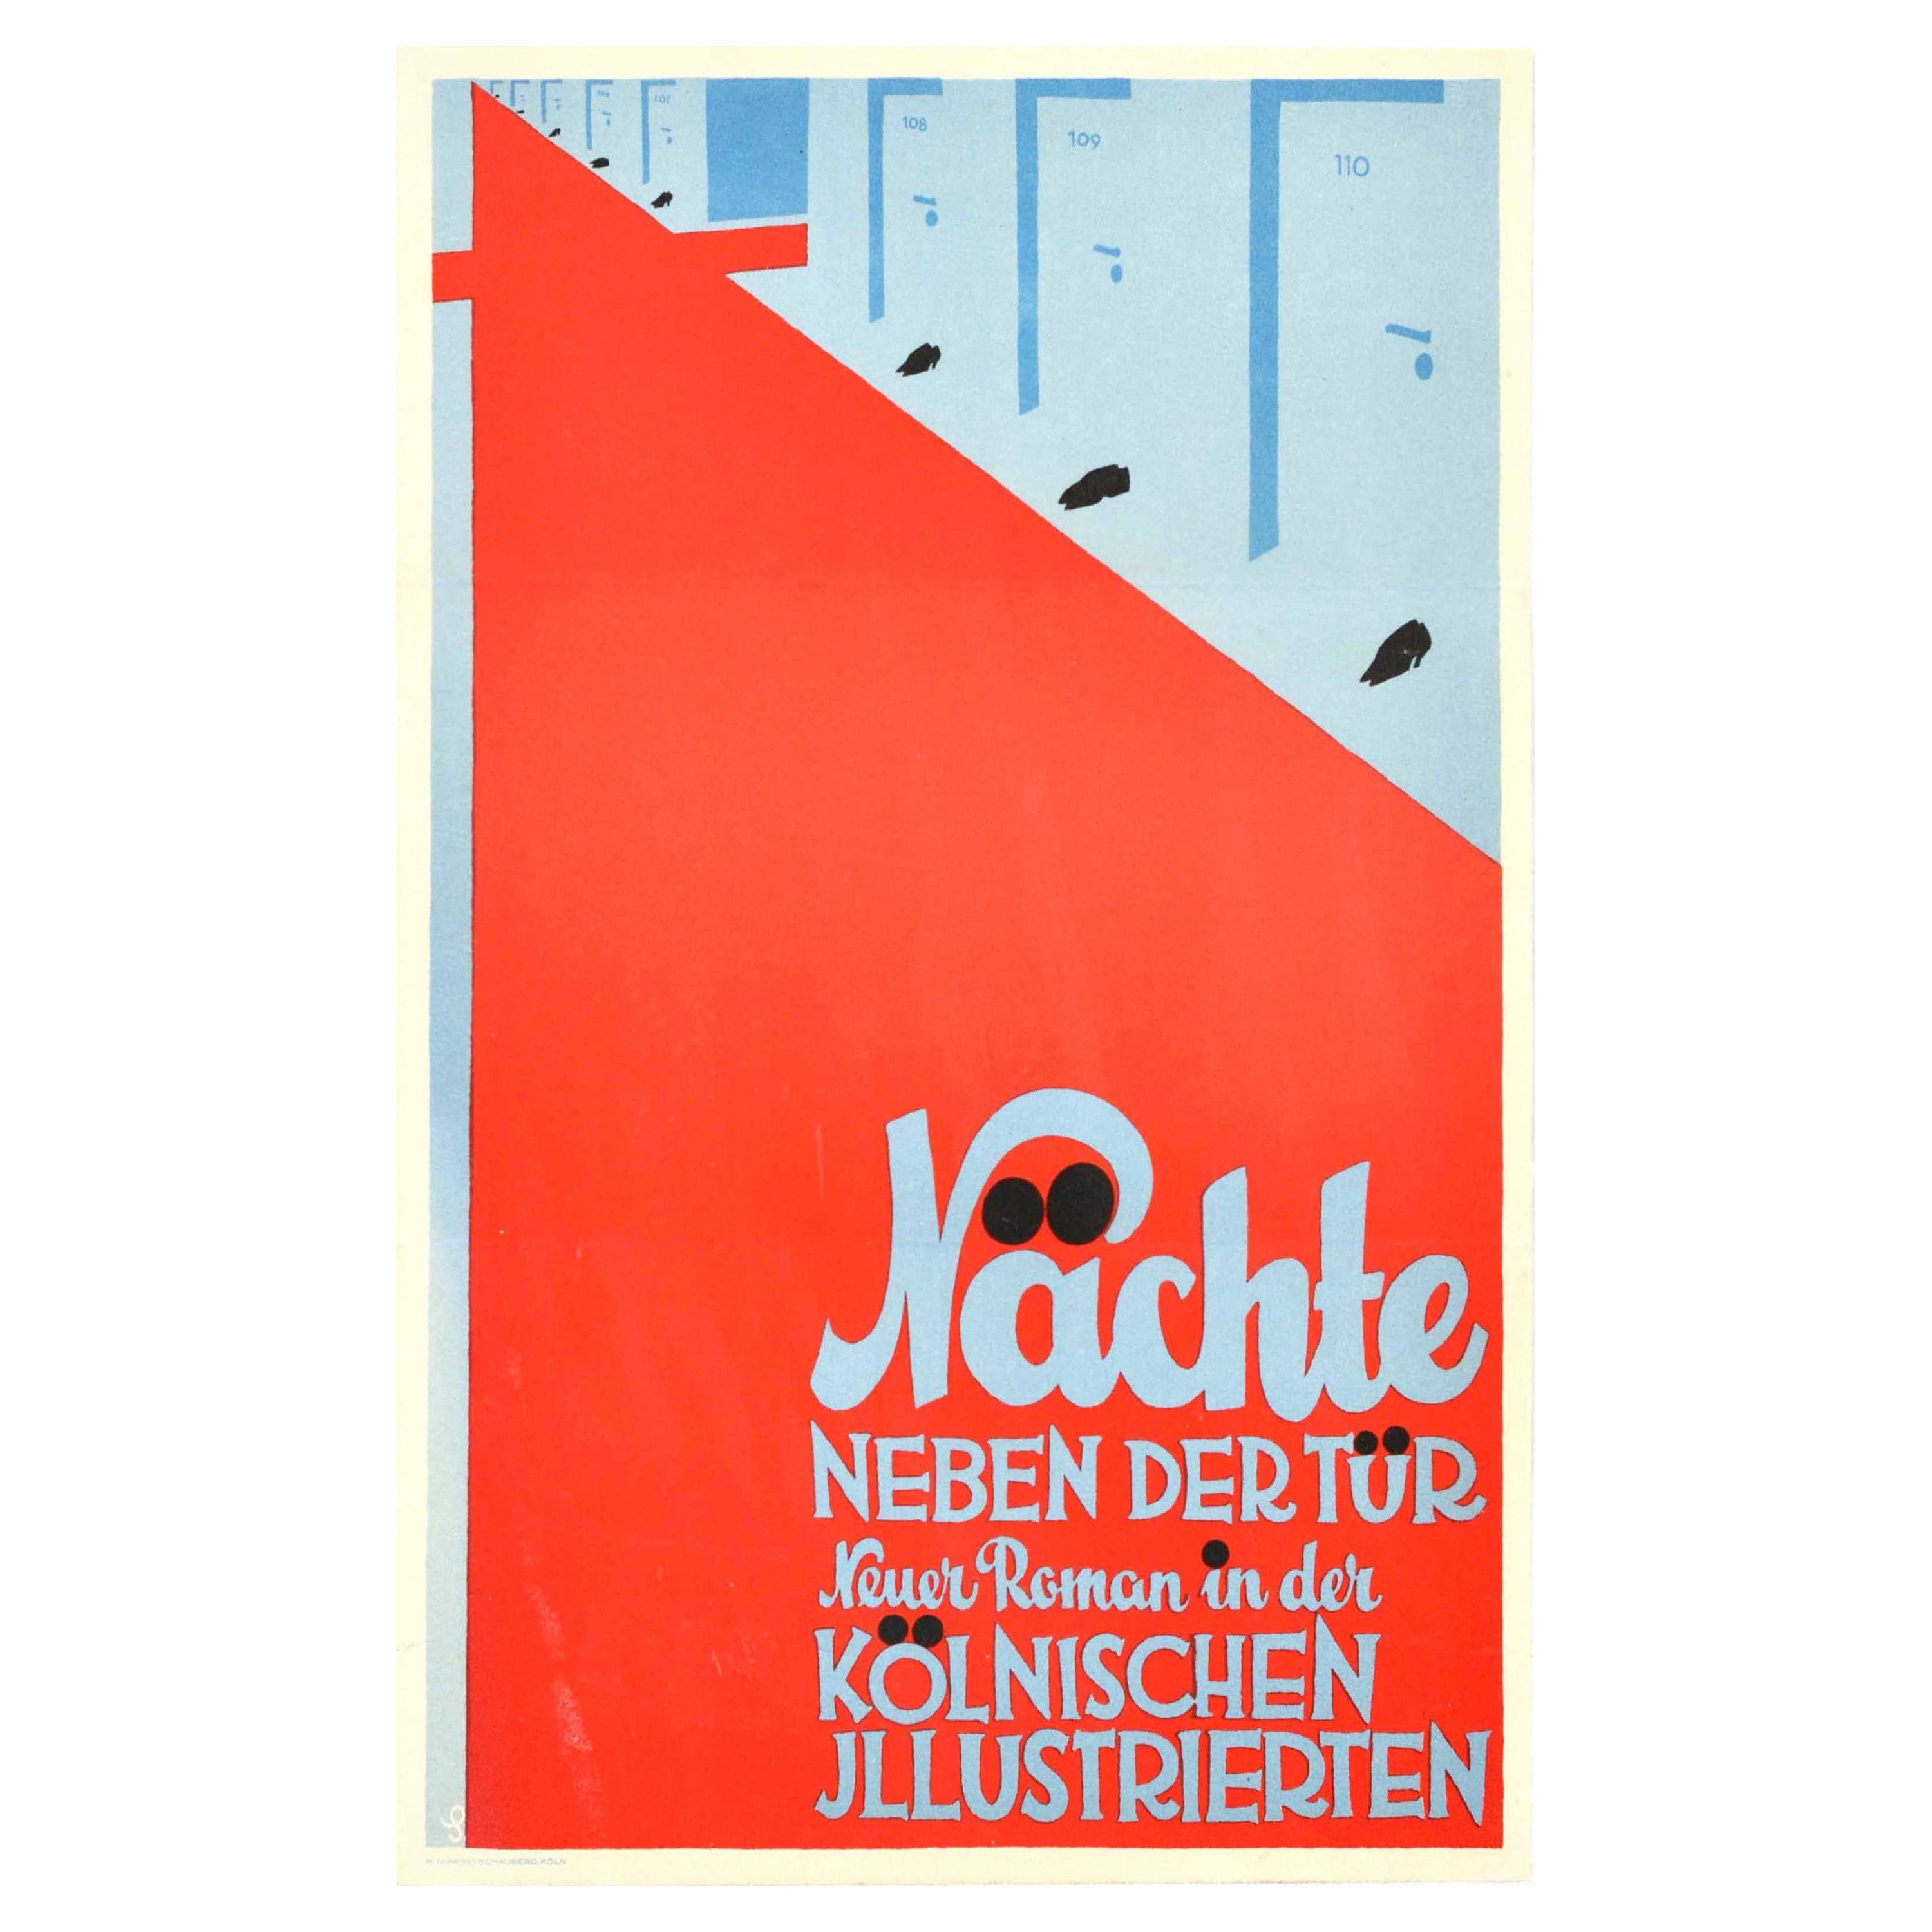 Original Vintage Advertising Poster Nachte Neben Der Tur Koln Illustrated Design For Sale